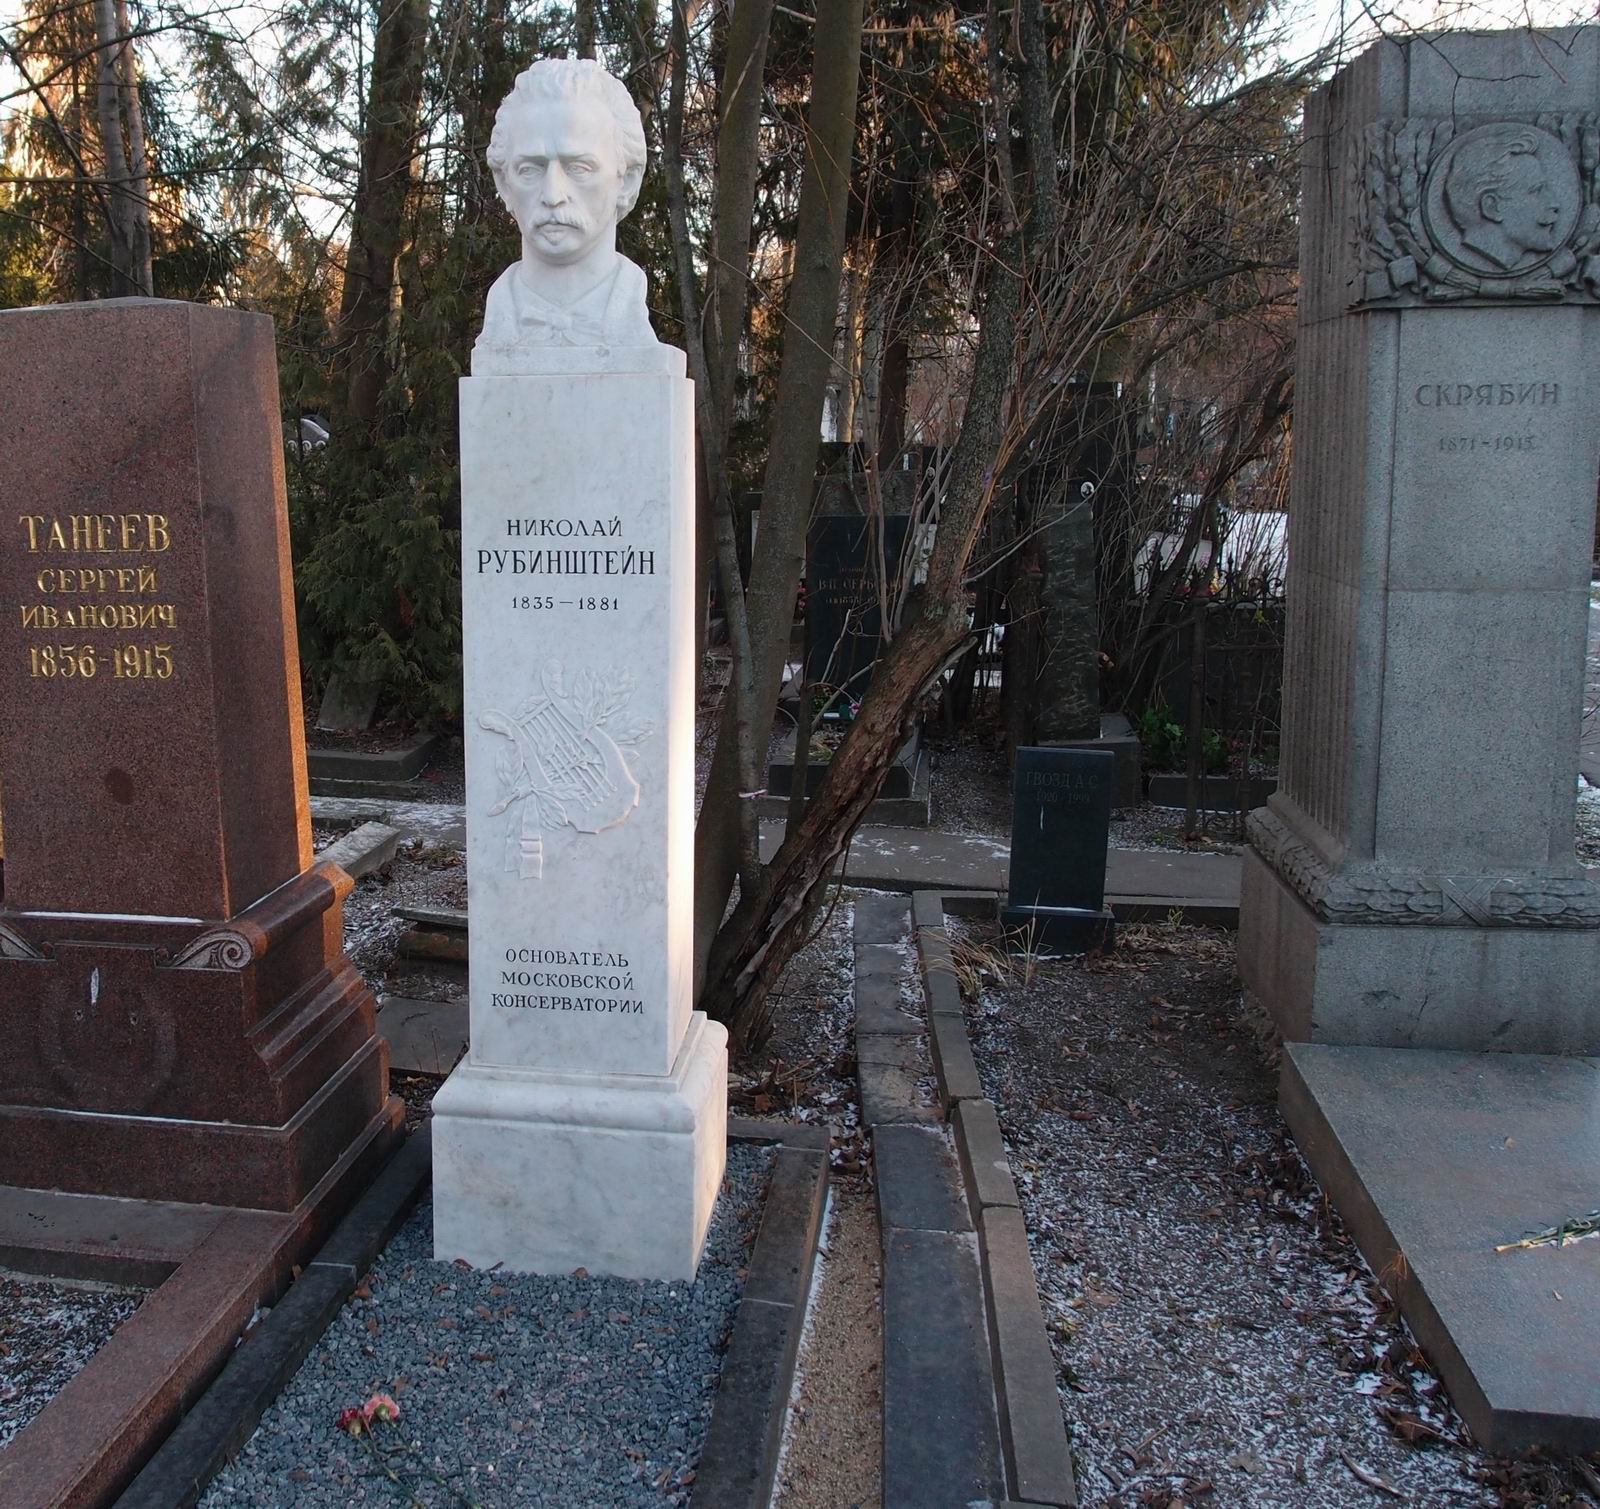 Памятник на могиле Рубинштейна Н.Г. (1835-1881), ск. В.Попандопуло, Е.Рудаков, арх. И.Француз, на Новодевичьем кладбище (3-40-2).